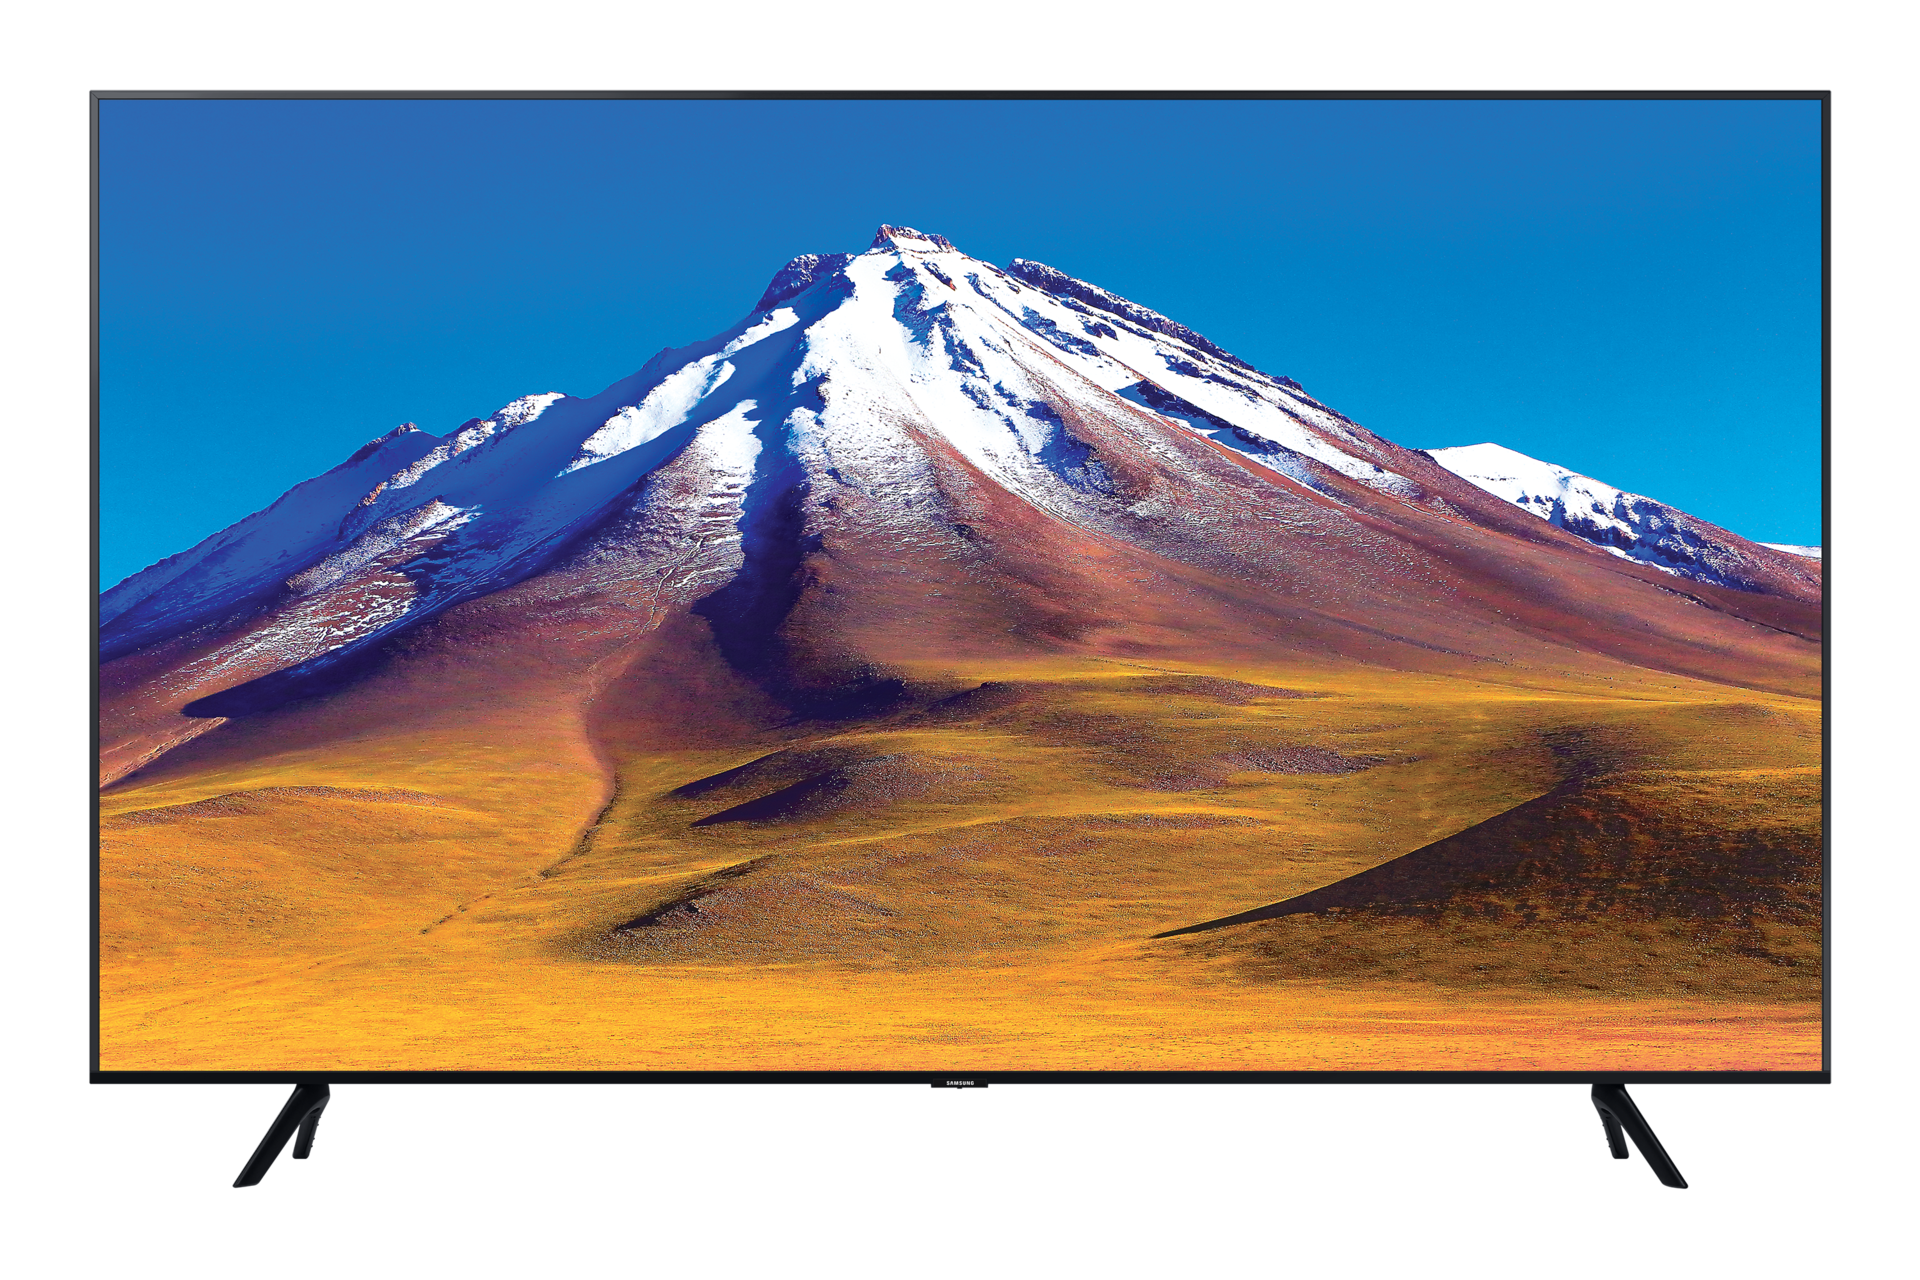 Telewizor 55 cali Samsung UHD seria TU7092 czyli niesamowite kolory dzięki procesorowi Crystal UHD - widok frontu urządzenia.